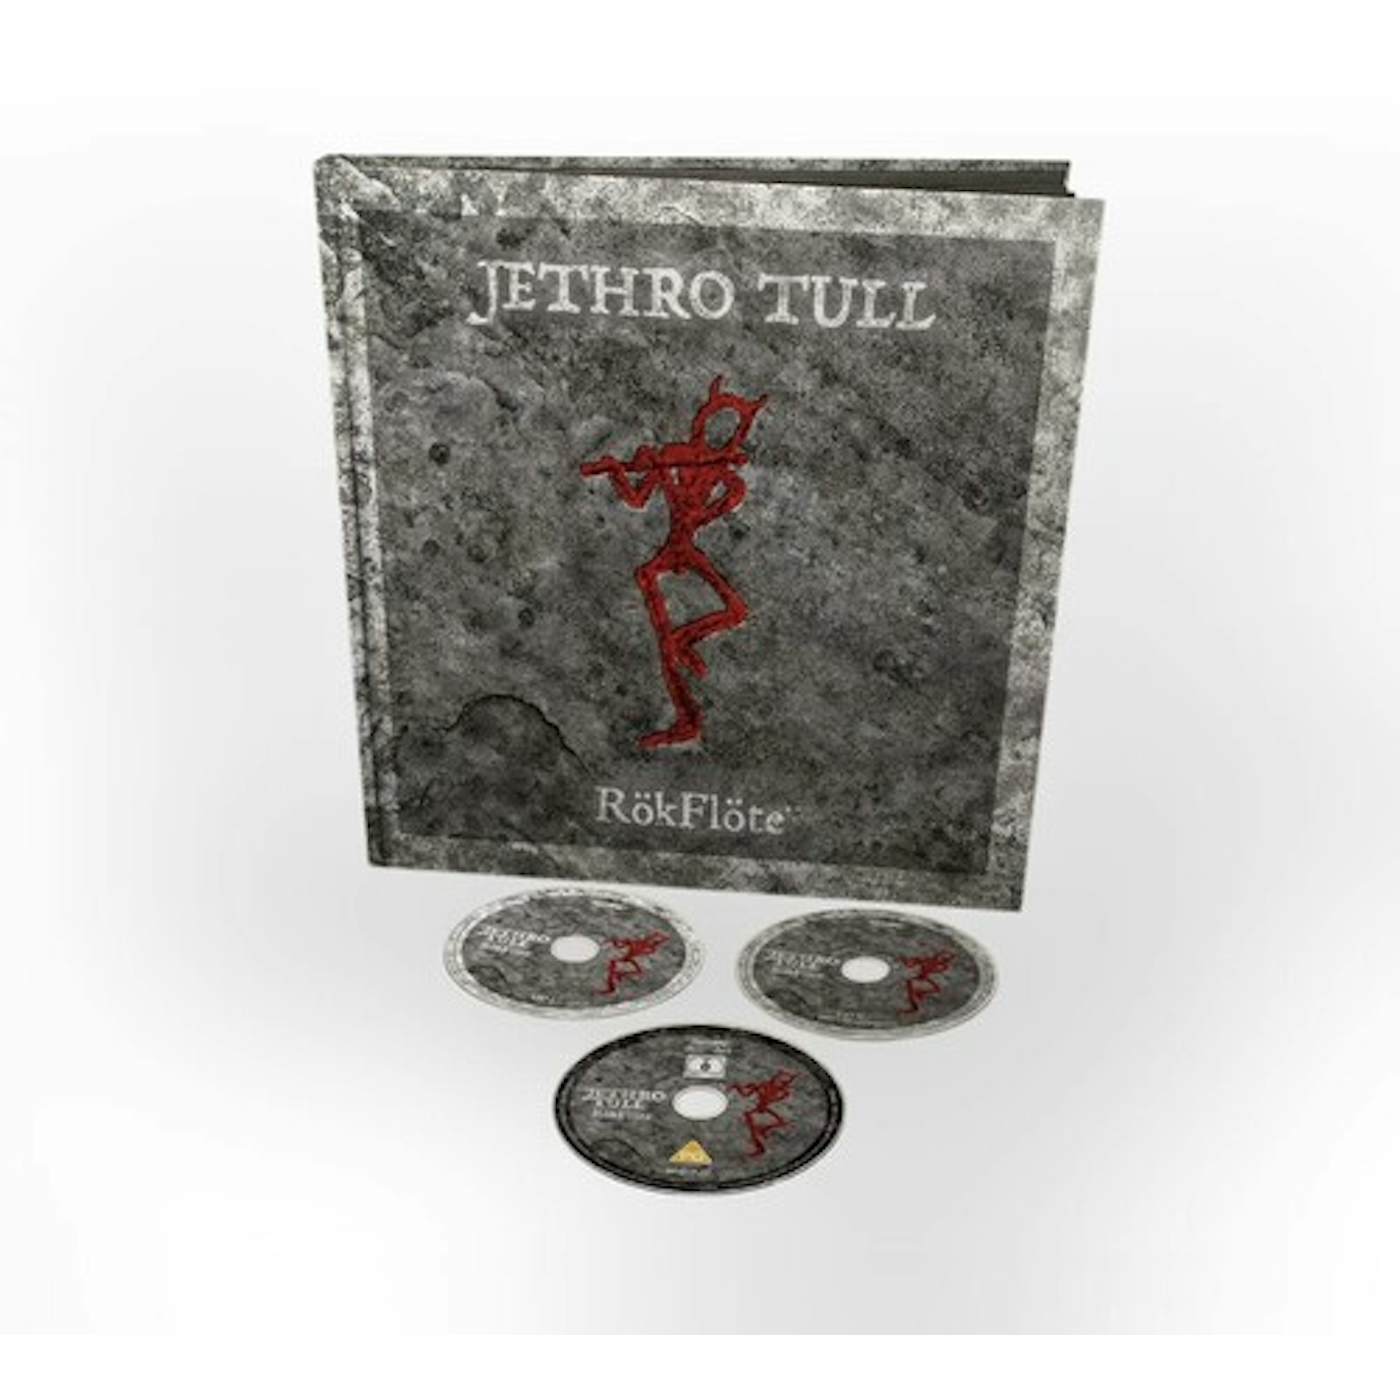 Jethro Tull ROKFLOTE CD